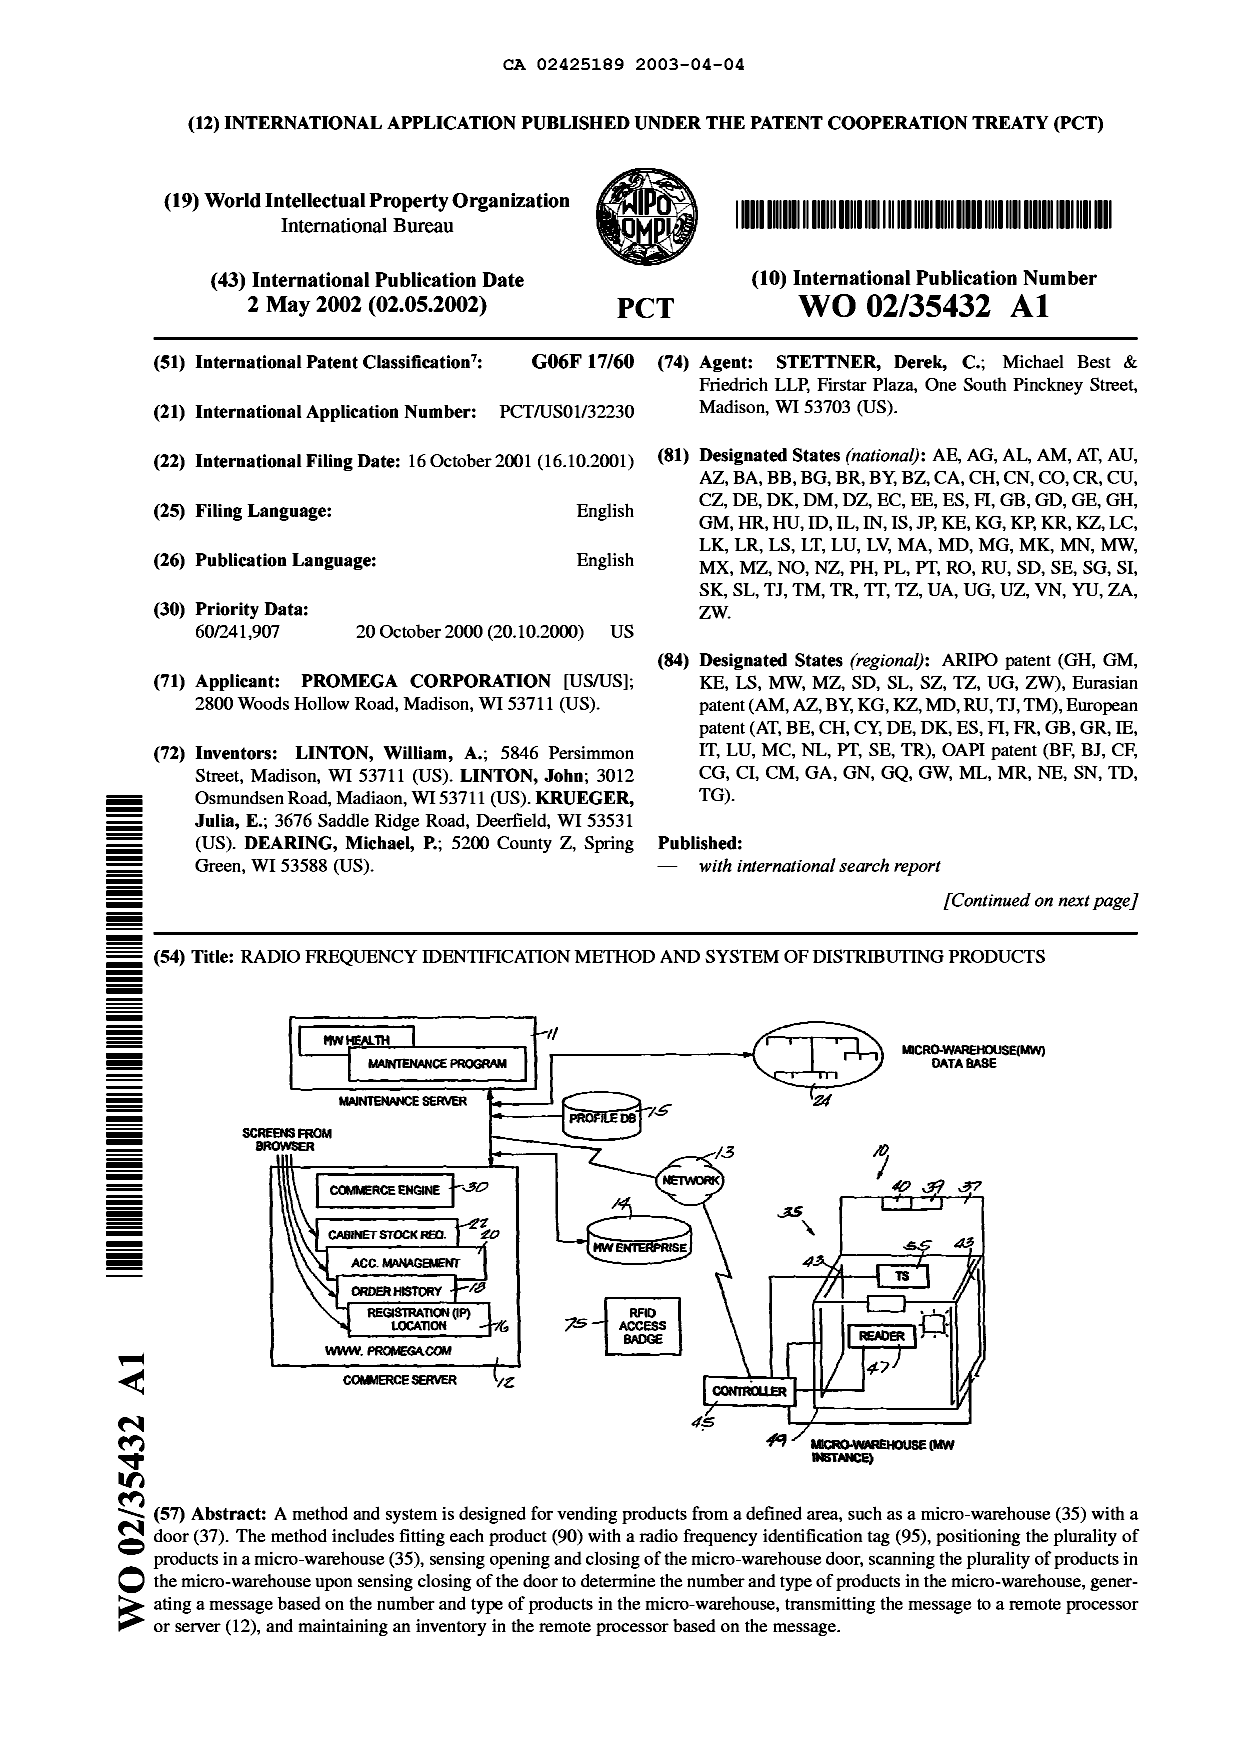 Document de brevet canadien 2425189. Abrégé 20030404. Image 1 de 2